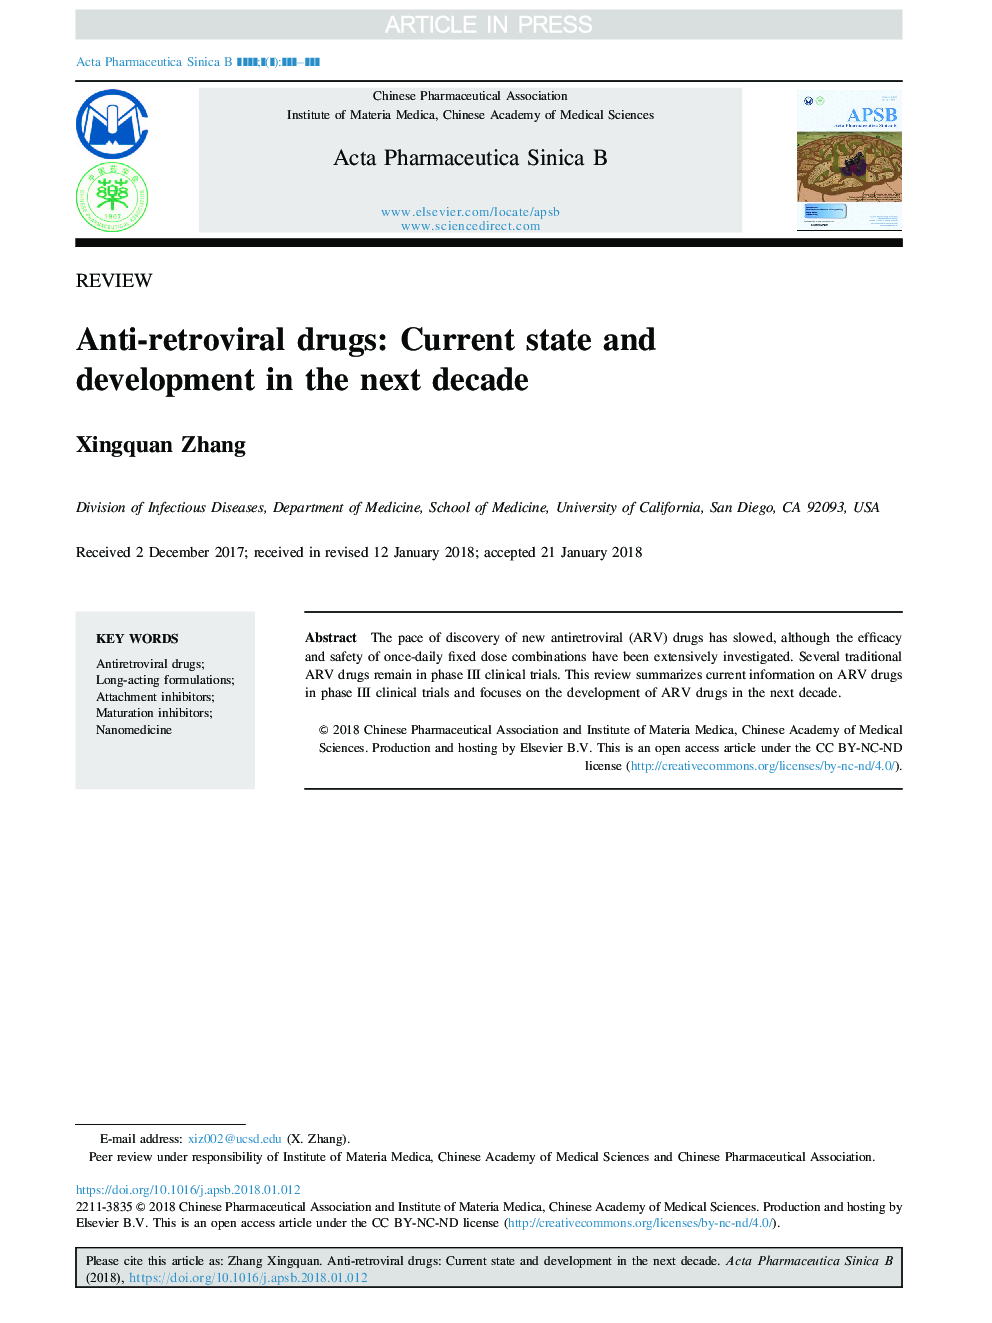 داروهای ضد رتروویروسی: وضعیت فعلی و پیشرفت در دهه آینده 